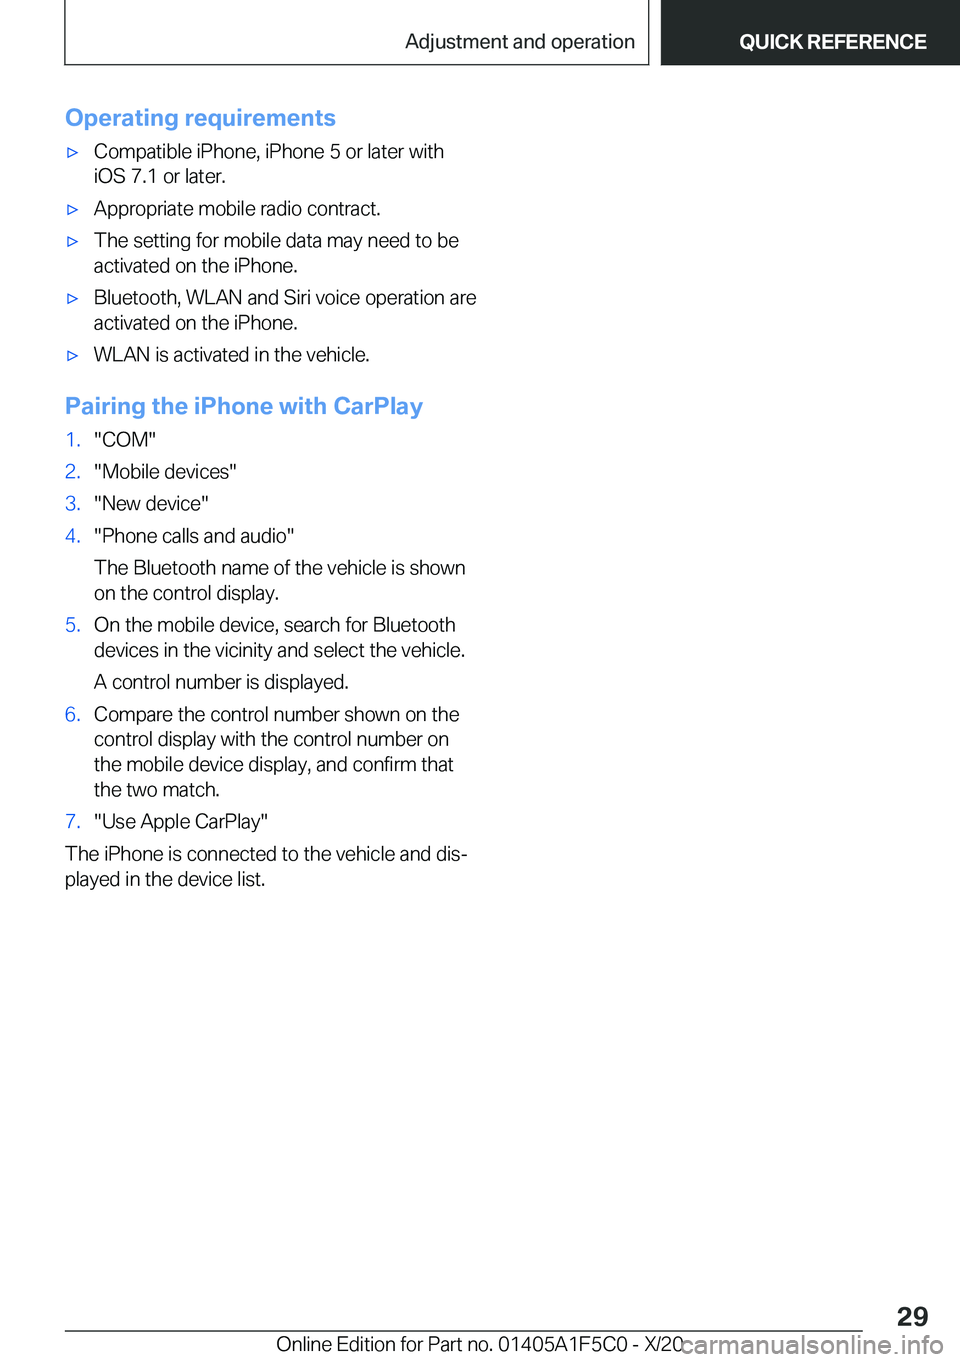 BMW X4 M 2021 Owners Manual �O�p�e�r�a�t�i�n�g��r�e�q�u�i�r�e�m�e�n�t�s'x�C�o�m�p�a�t�i�b�l�e��i�P�h�o�n�e�,��i�P�h�o�n�e��5��o�r��l�a�t�e�r��w�i�t�h
�i�O�S��7�.�1��o�r��l�a�t�e�r�.'x�A�p�p�r�o�p�r�i�a�t�e��m�